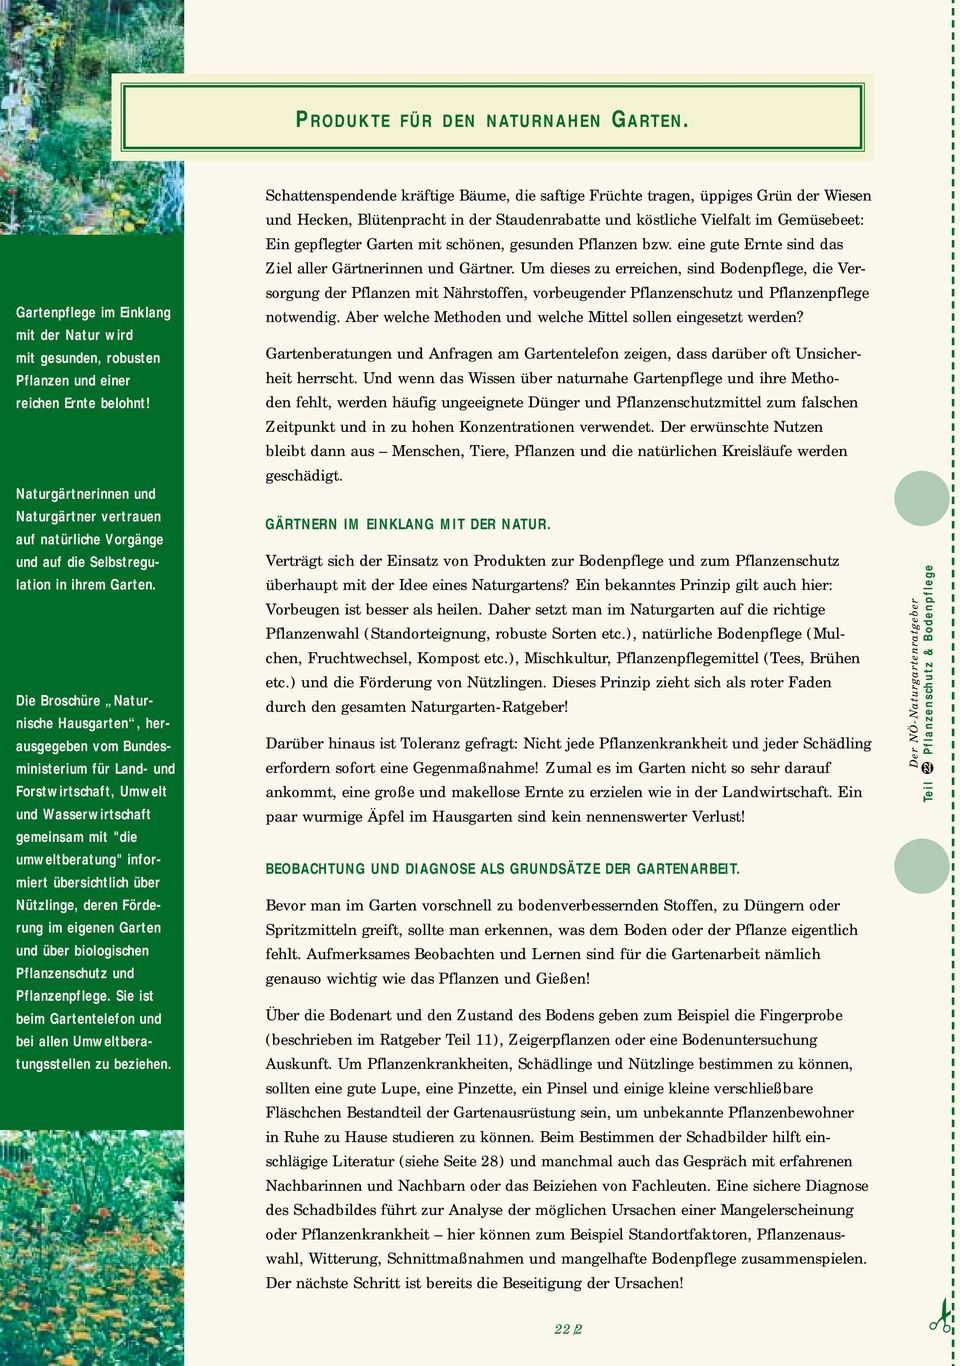 Die Broschüre Naturnische Hausgarten, herausgegeben vom Bundesministerium für Land- und Forstwirtschaft, Umwelt und Wasserwirtschaft gemeinsam mit "die umweltberatung" informiert übersichtlich über